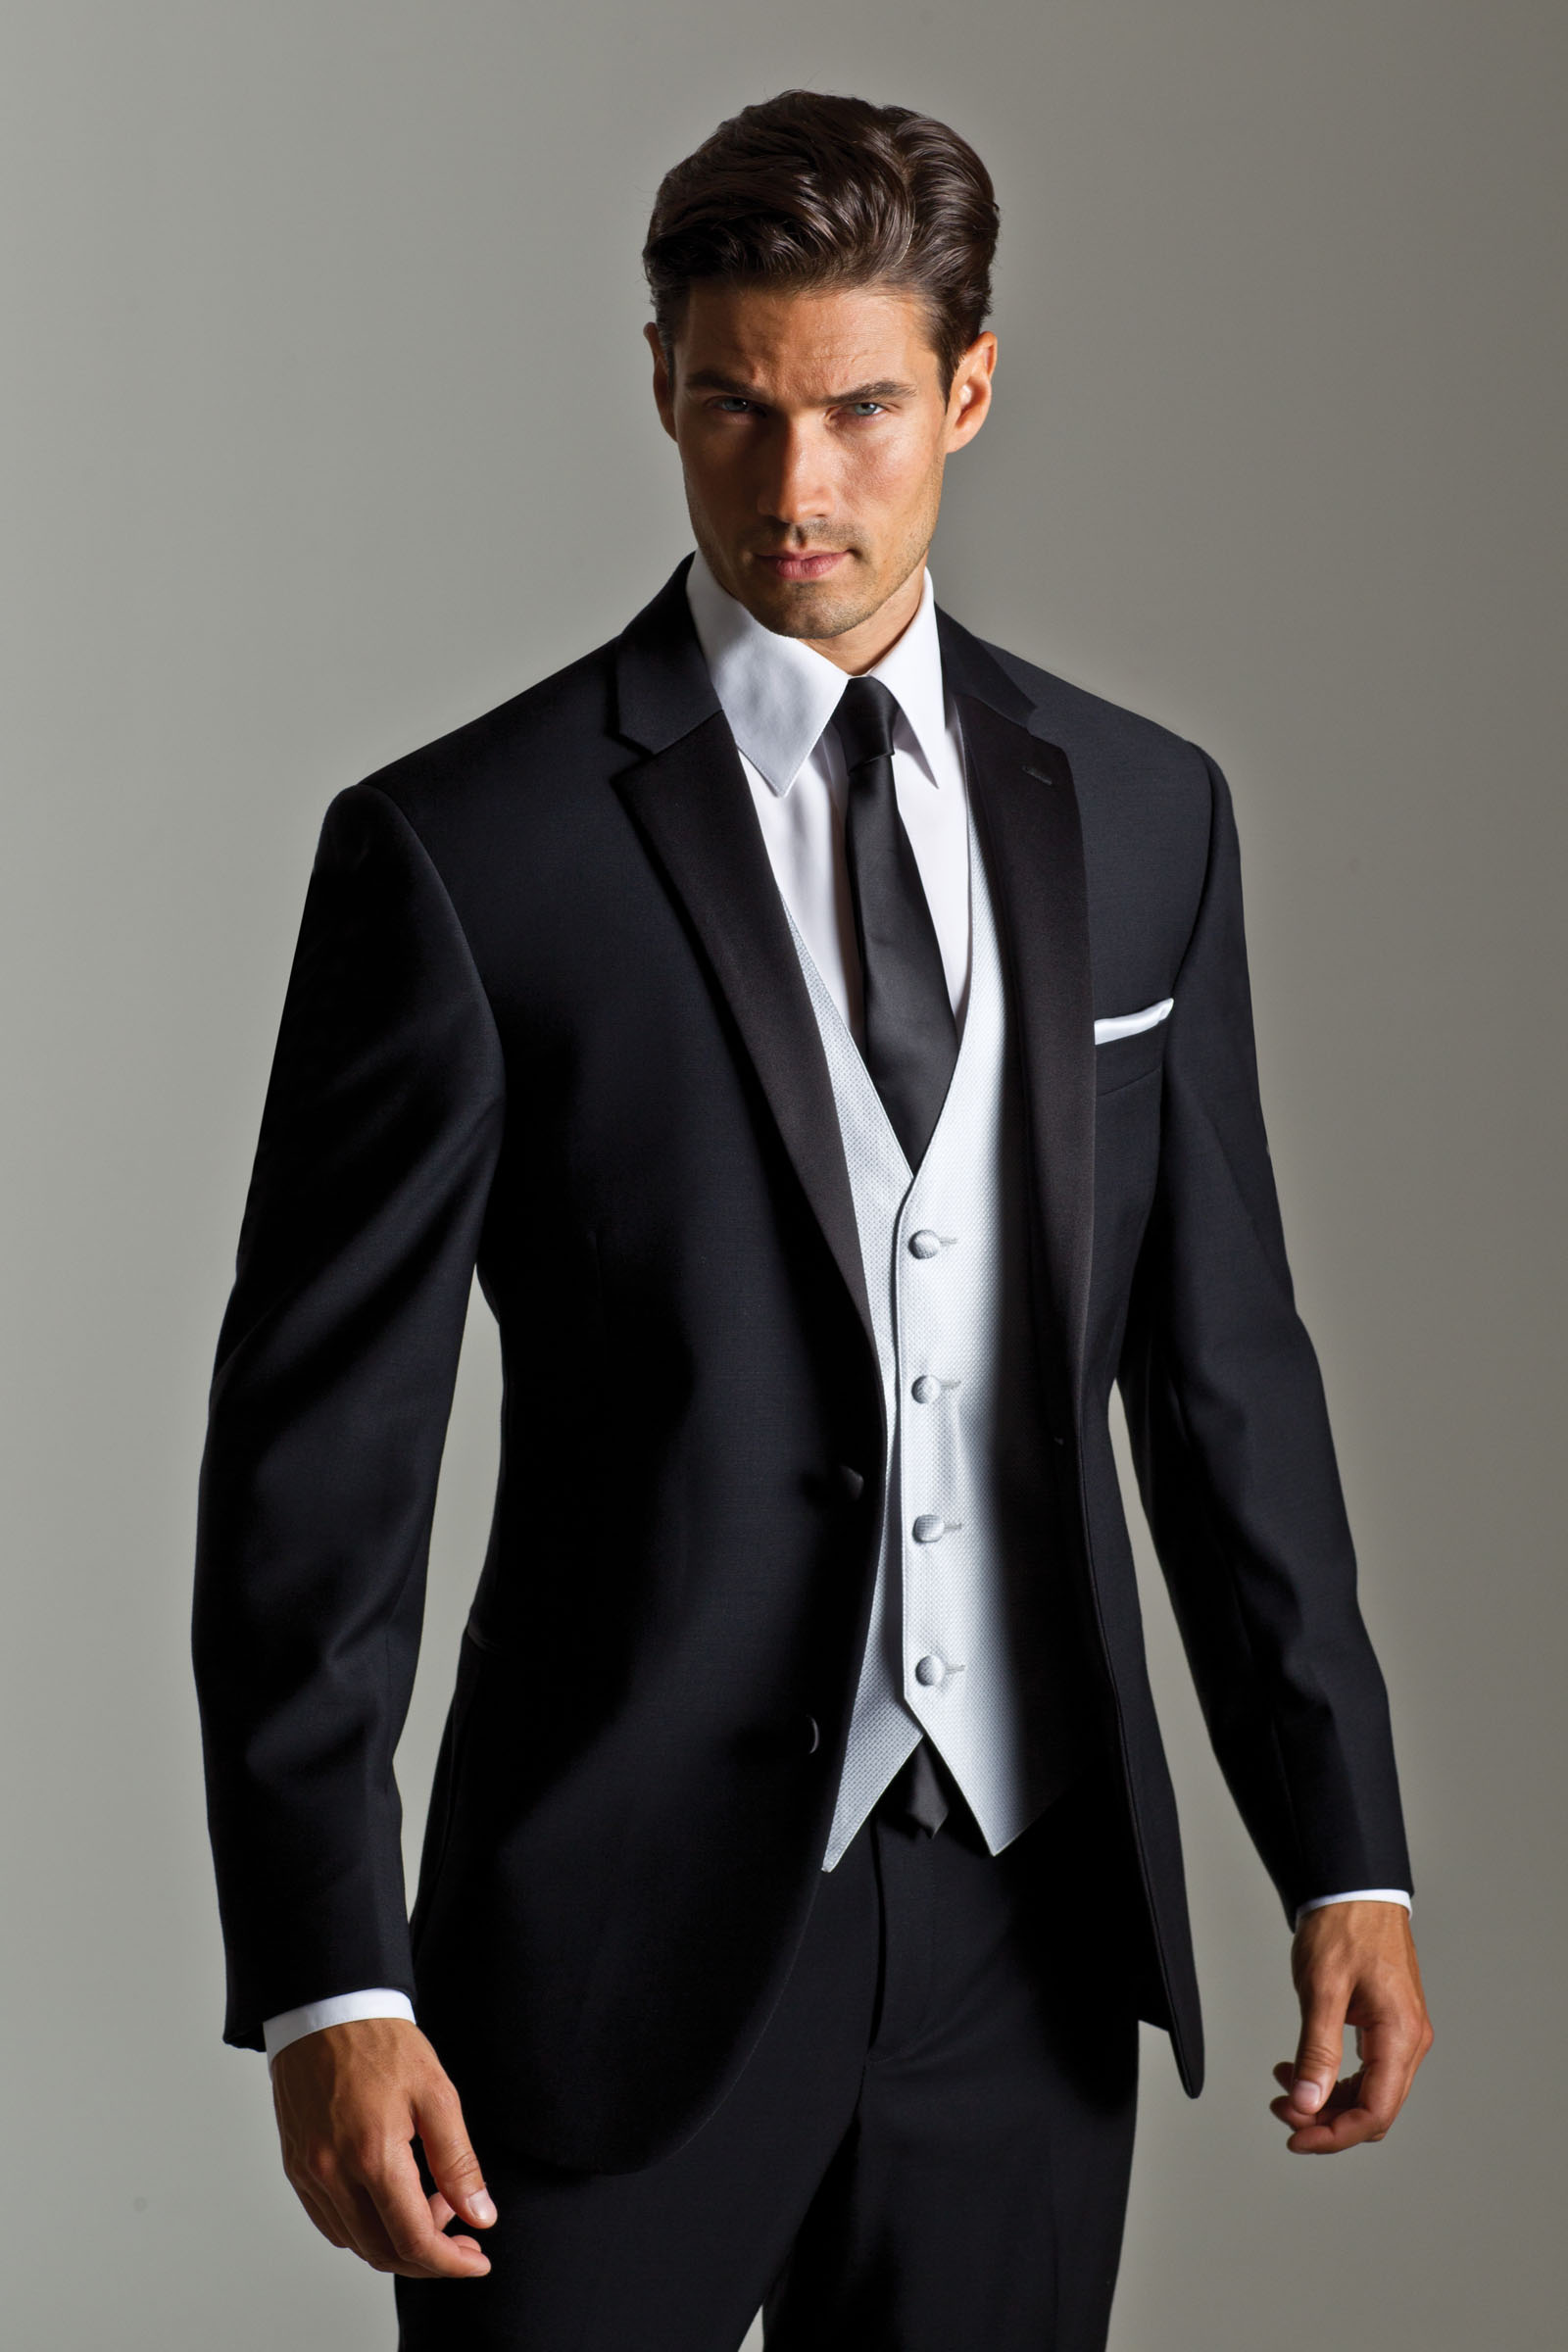 Wedding Tuxedos: Cheap or Expensive?